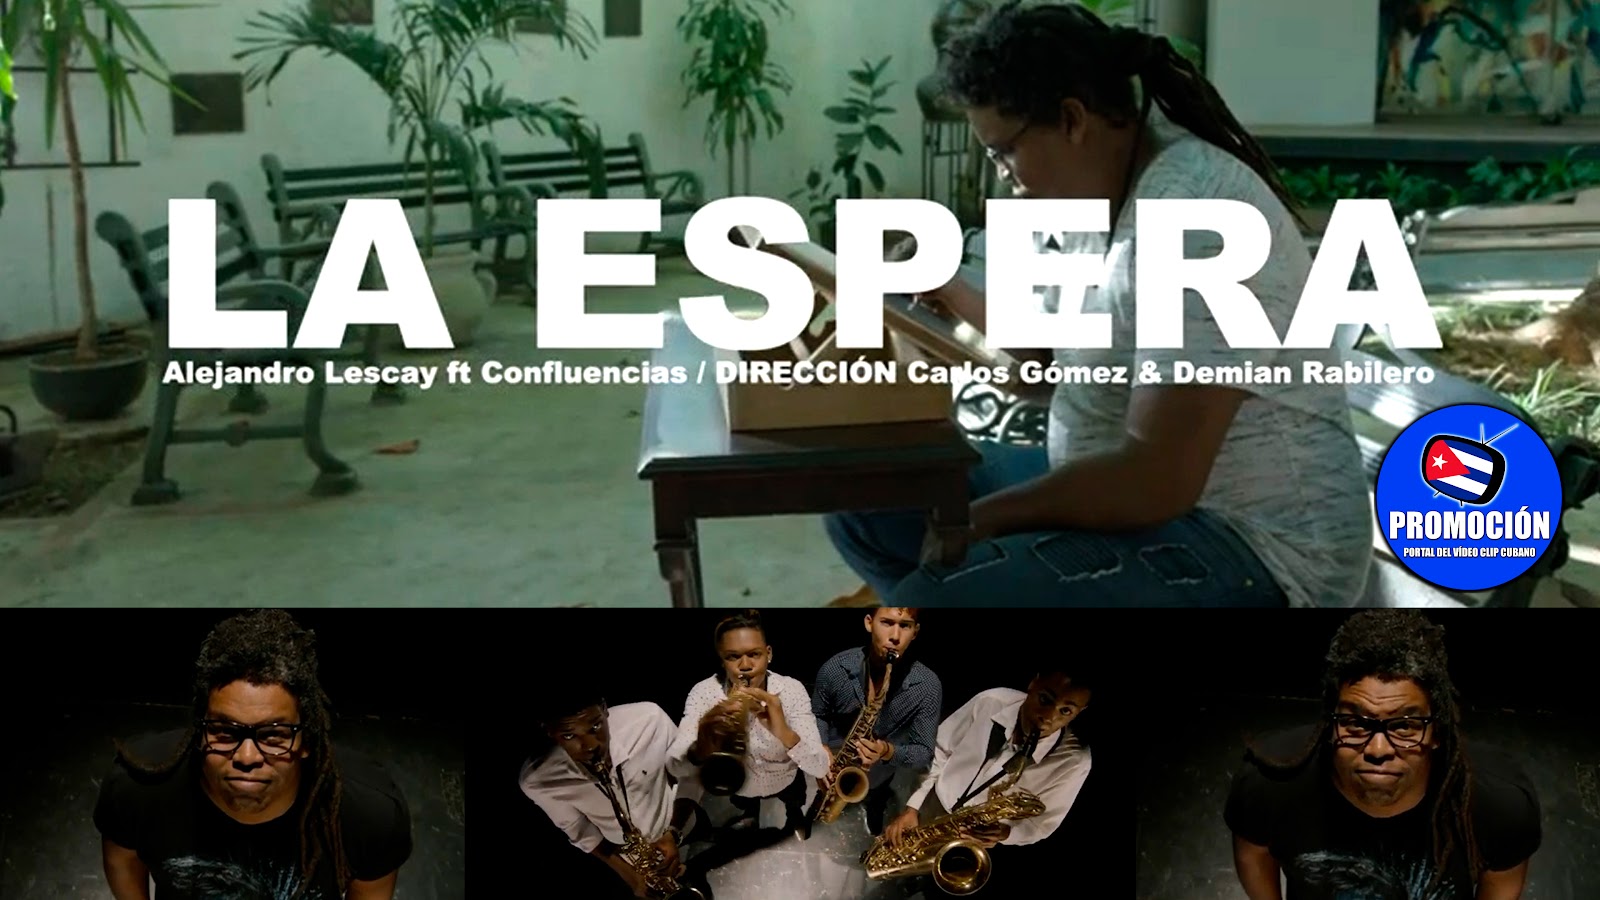 Lescay y Confluencias - ¨La espera¨ - Dirección: Carlos Gómez - Demian Rabilero. Portal Del Vídeo Cubano. Música instrumental cubana. CUBA.